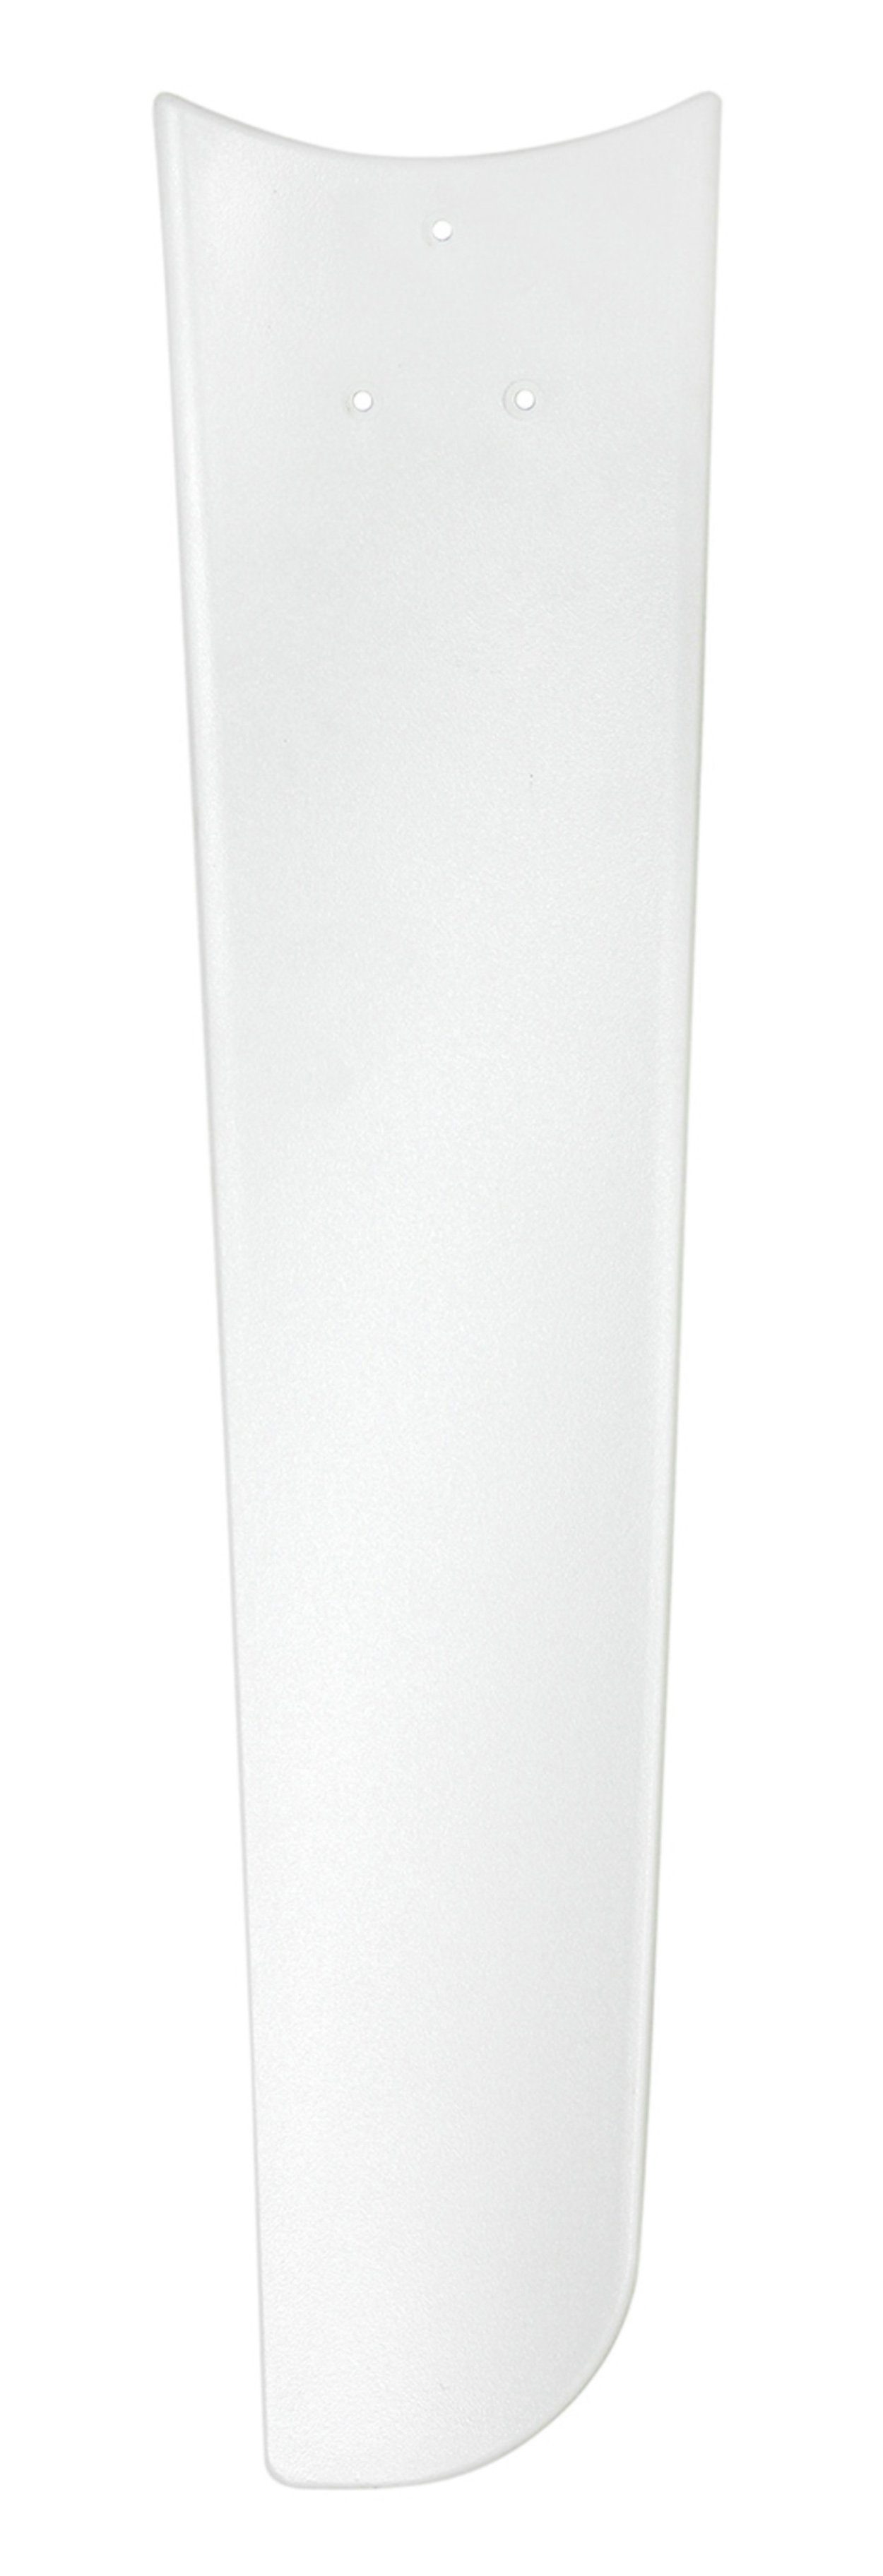 CasaFan Deckenventilator Mirage Weiß